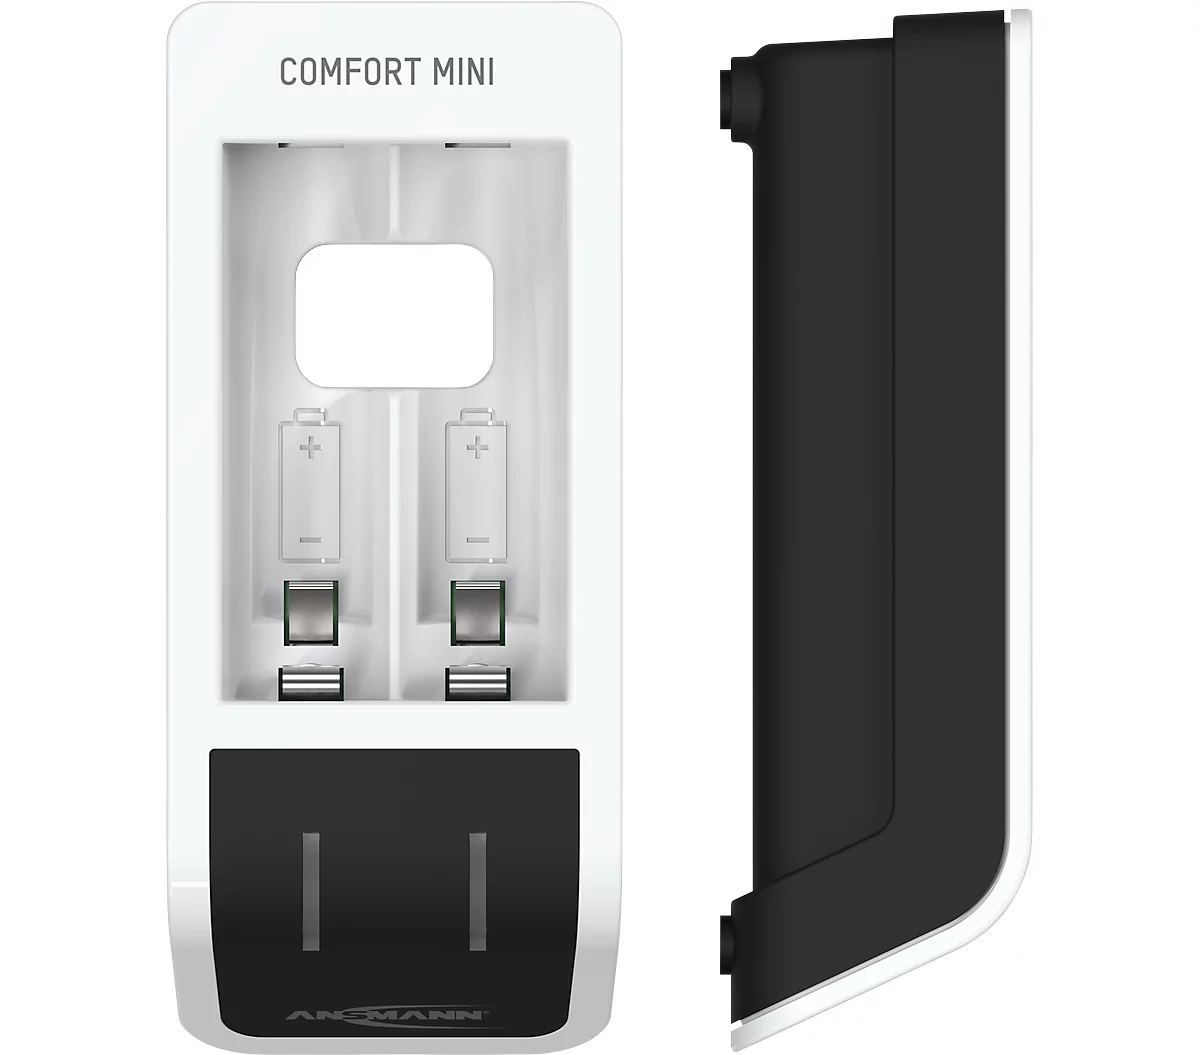 Batterieladegerät Ansmann Comfort Mini, für 1-2 Mignon AA/Micro AAA, Ladeanzeige, inkl. 2 x AA Akkus & USB-Kabel